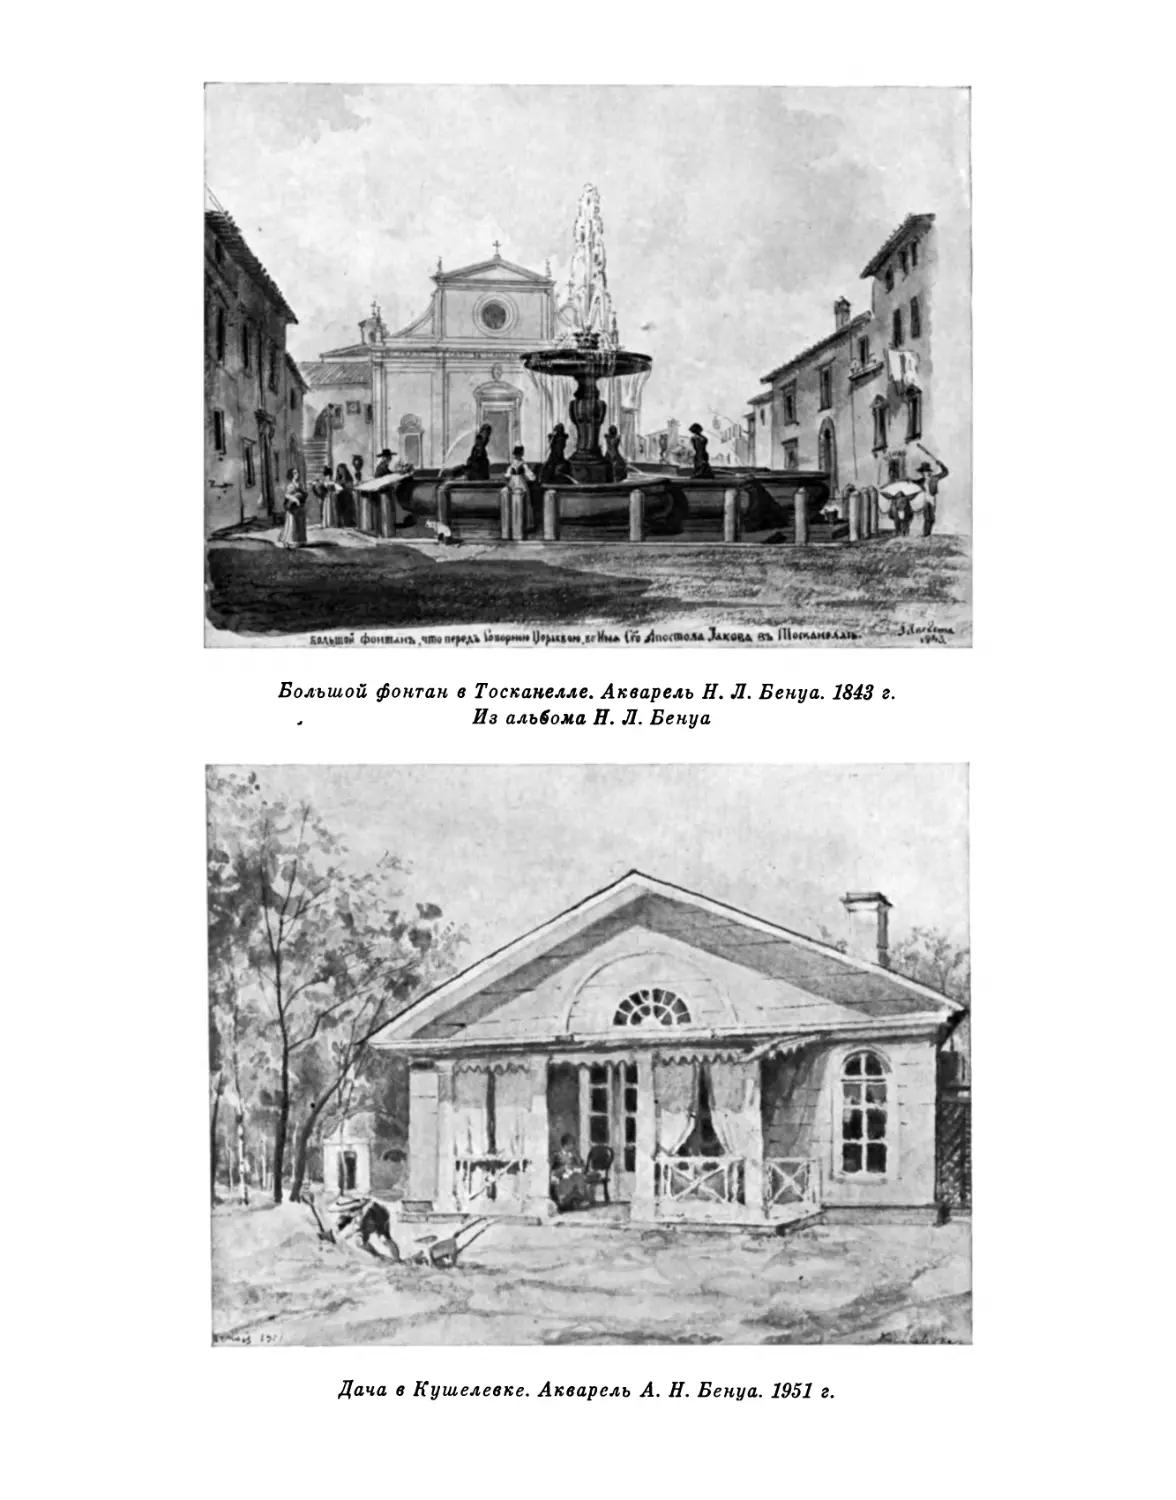 Большой фонтан в Тоскаыелле. Акварель Н. Л. Бенуа. 1843 г.; Дача в Кушелевке. Акварель А. Н. Бенуа. 1951 г.